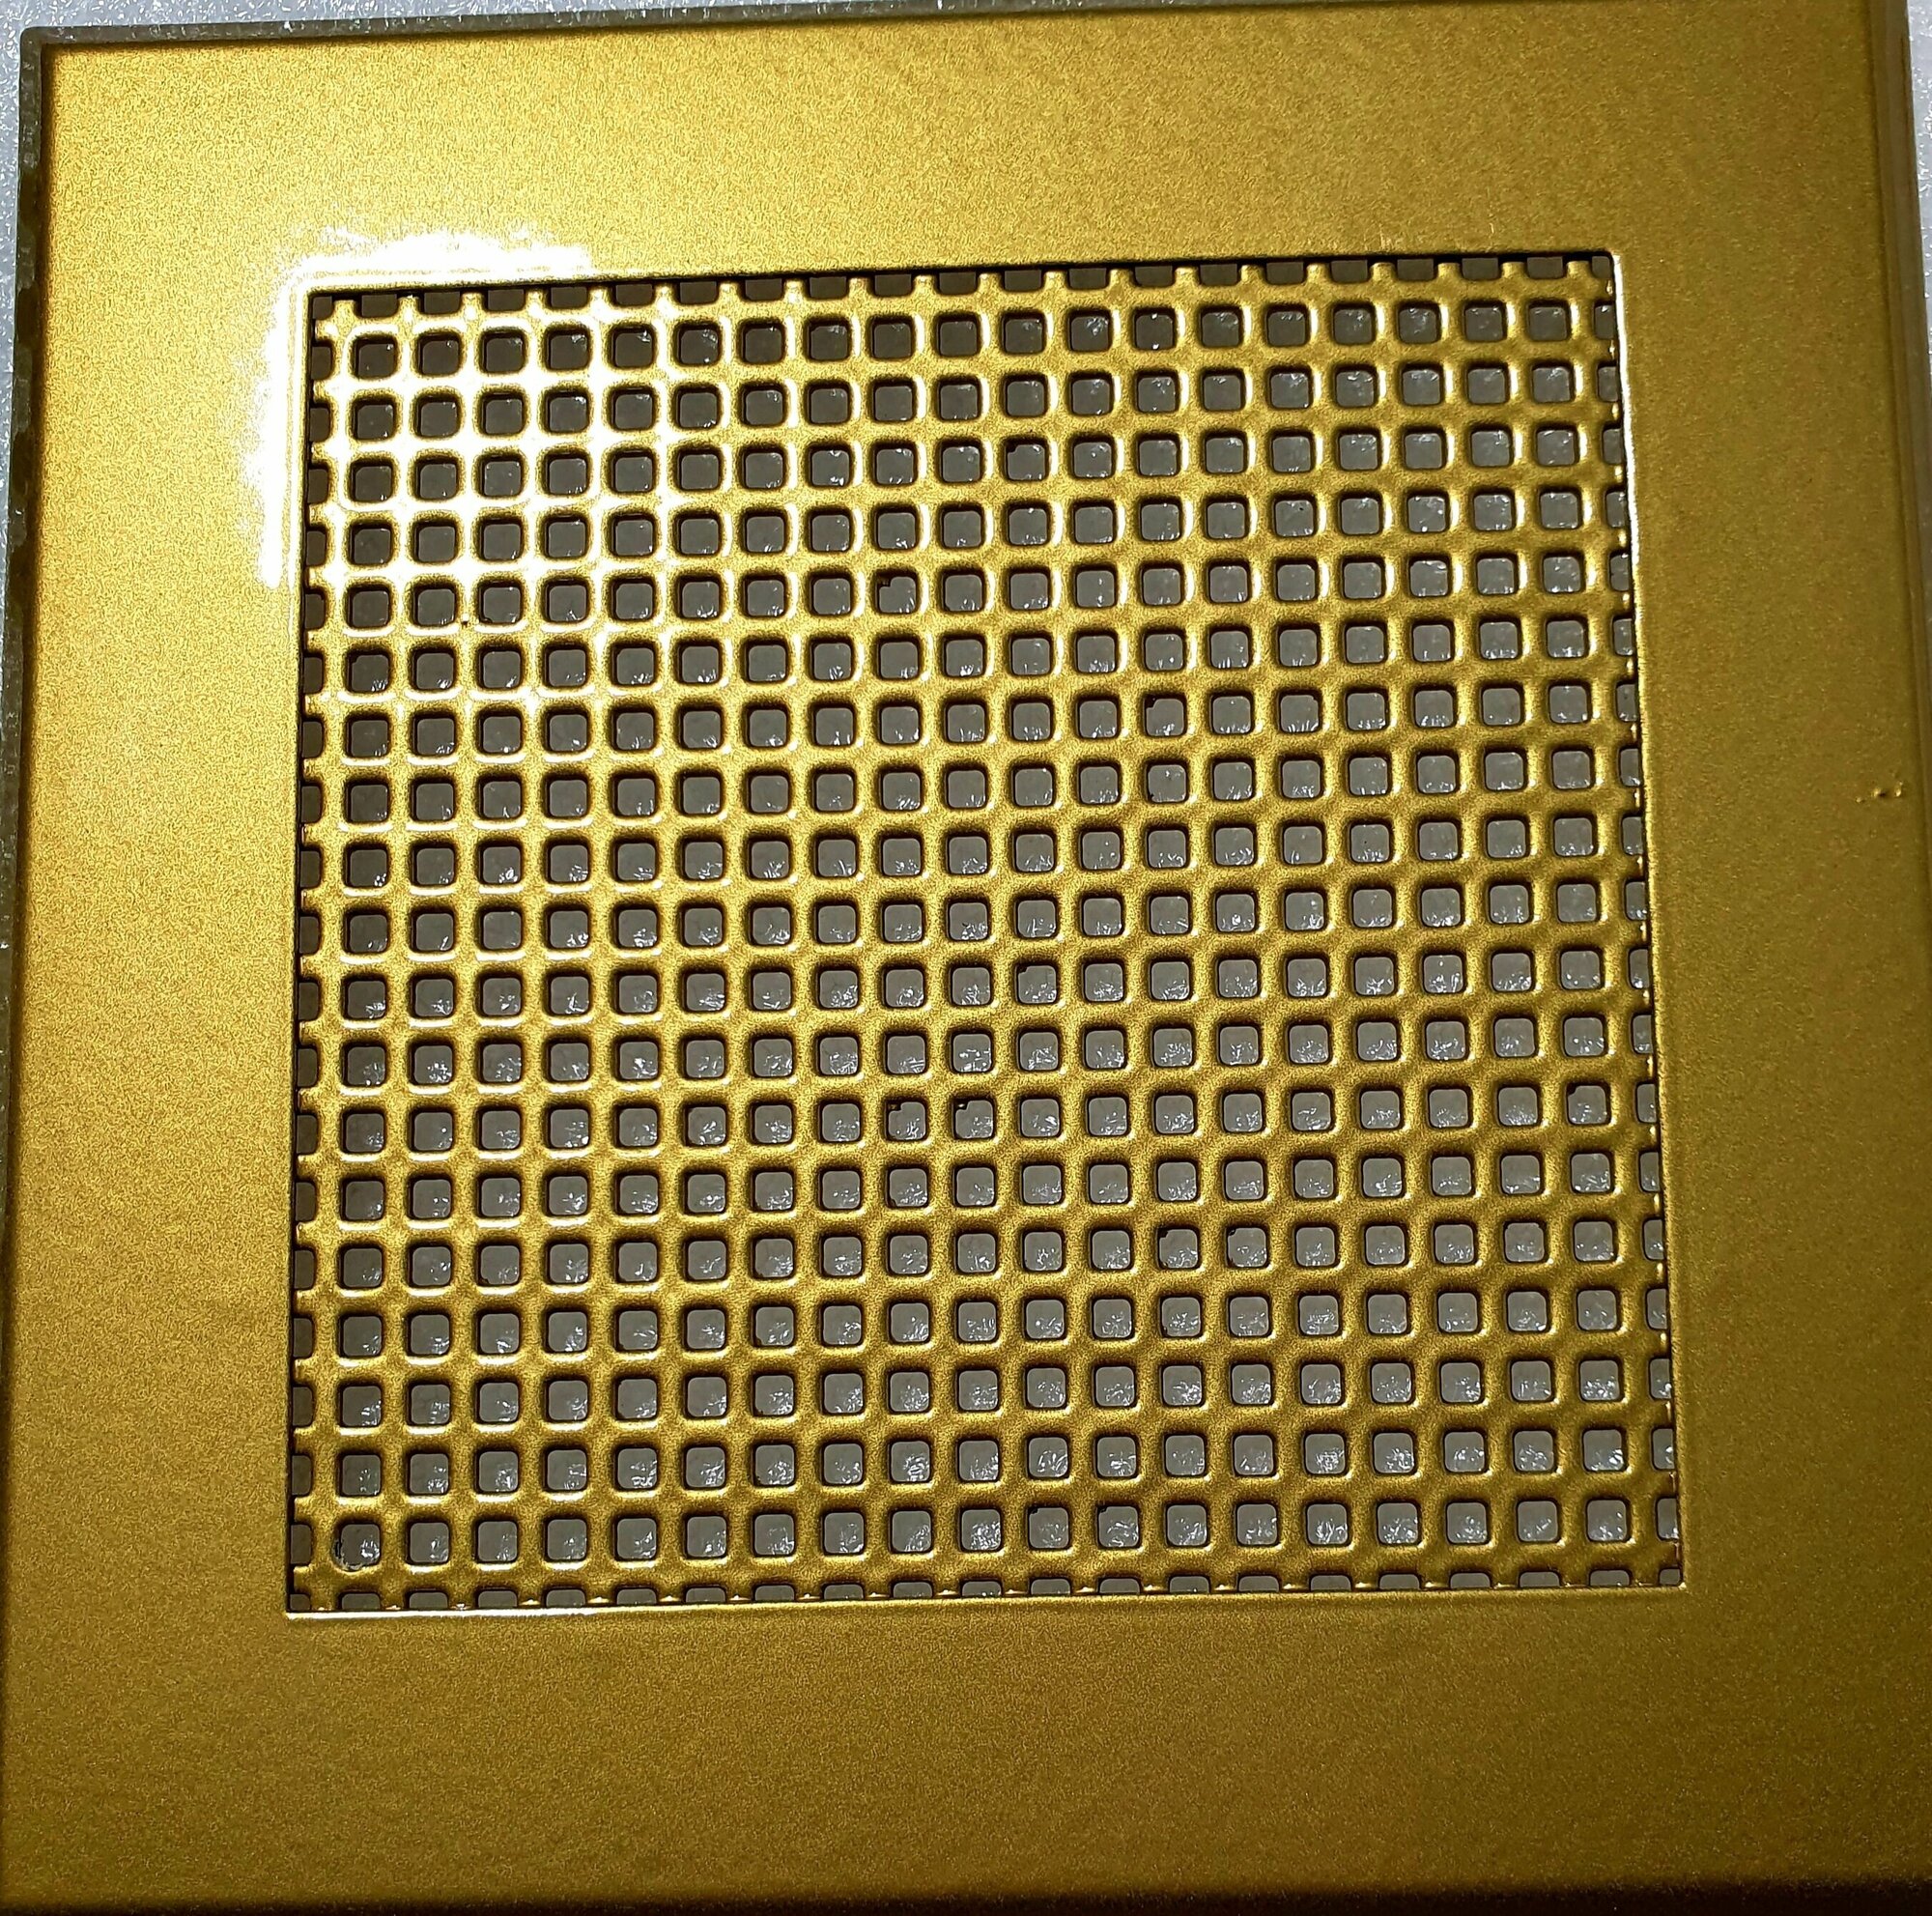 Вентиляционная решетка металлическая на магнитах 100х100мм. Перфорация "рисунок" квадрат. Цвет: золотой